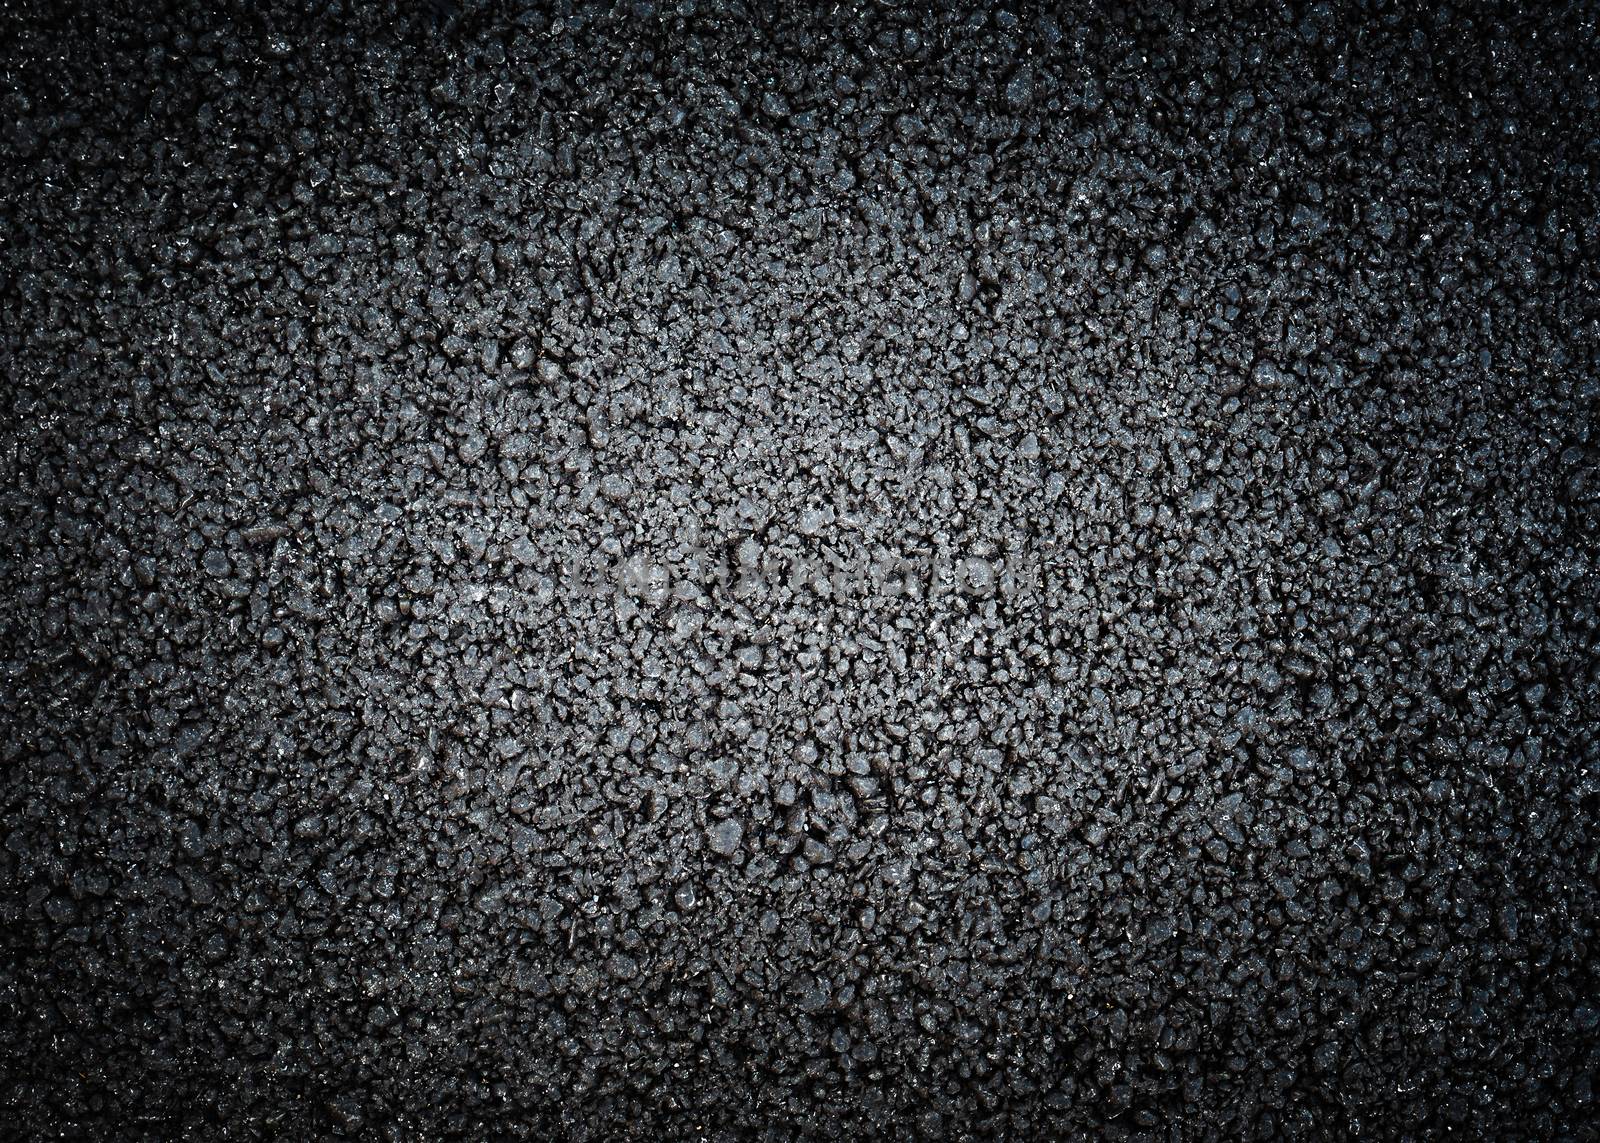 Black asphalt texture by dutourdumonde